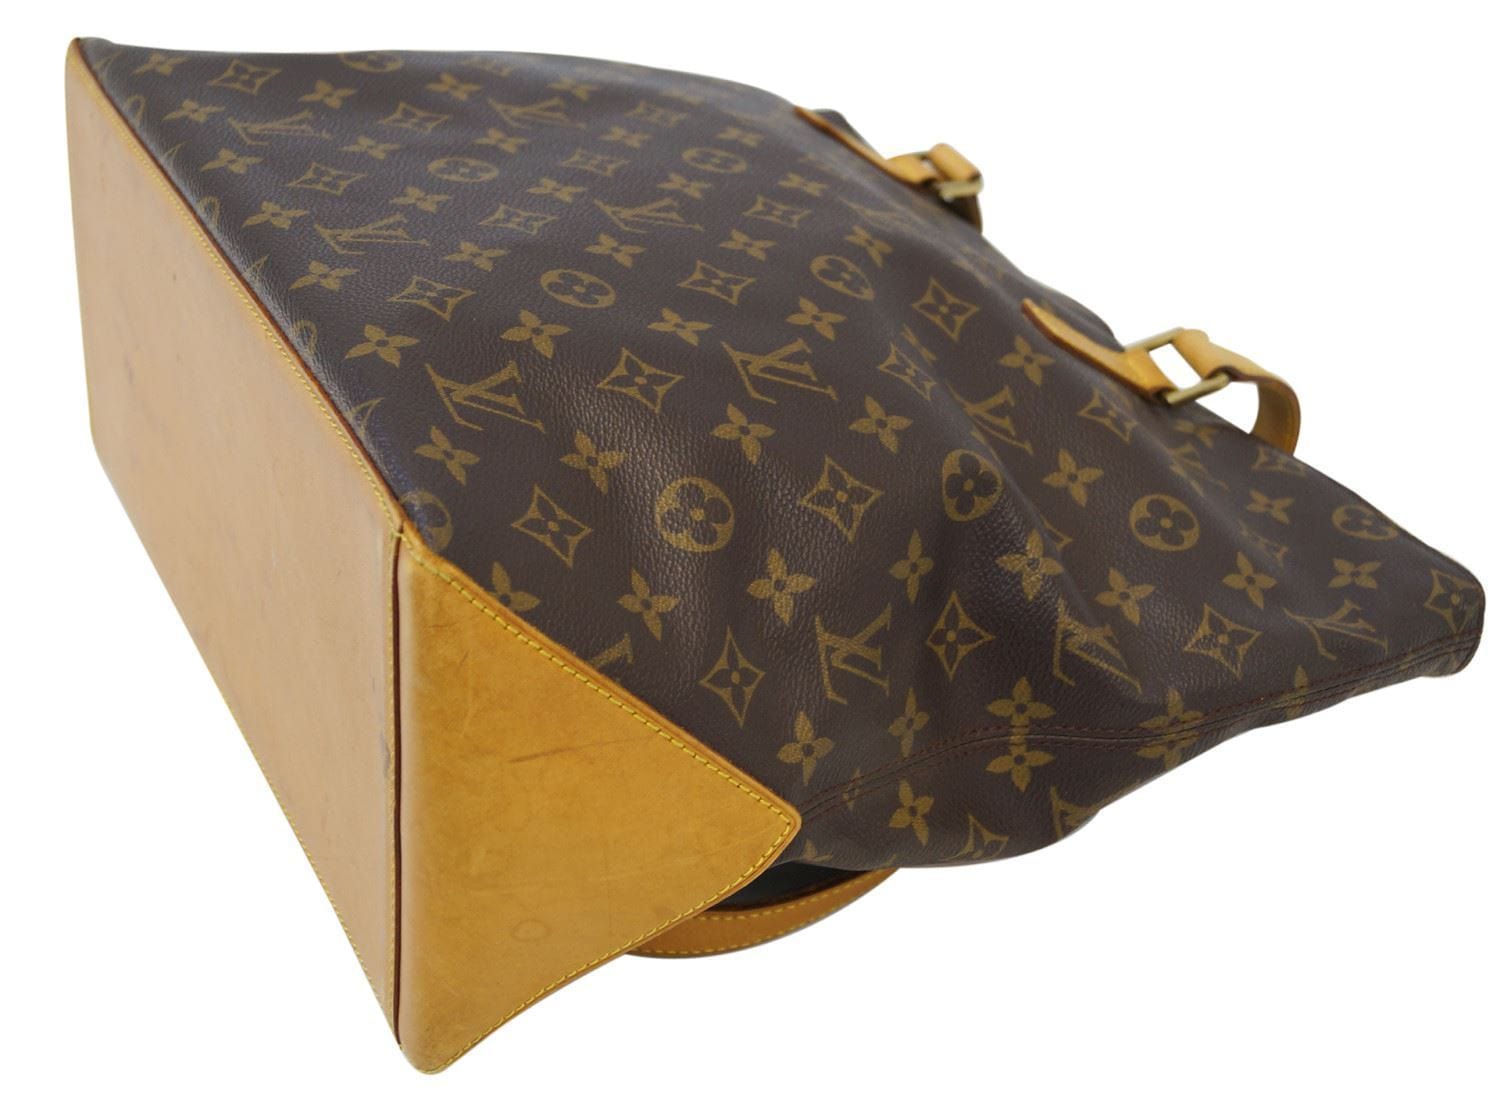 Louis Vuitton tote bag REVIEW 2021 #LVBAG mezzo 